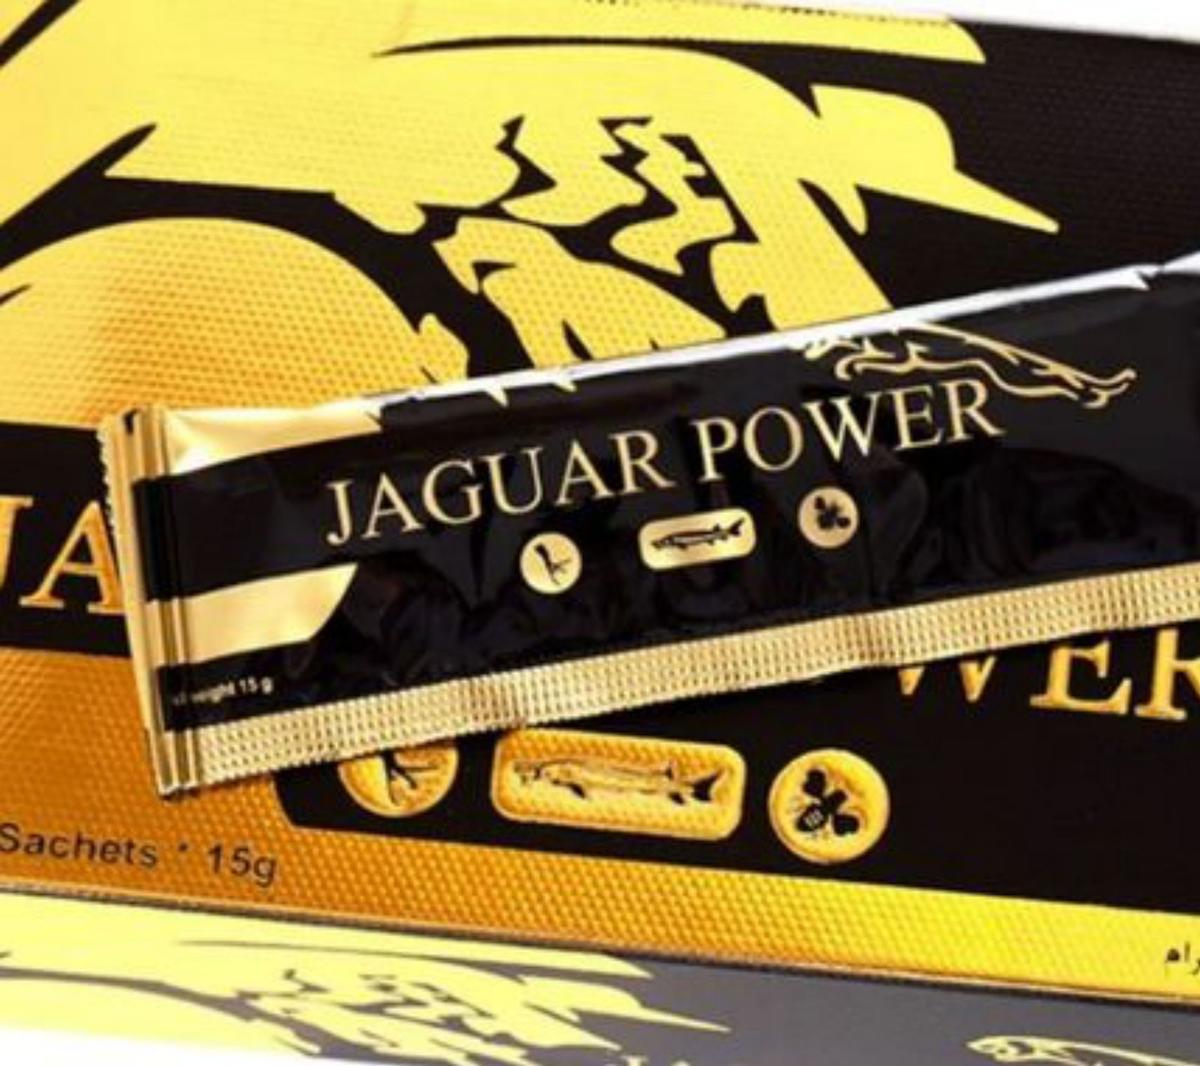 Jaguar Power. Antes de España, fue prohibida en Colombia dos años atrás. Aún se puede comprar en webs.